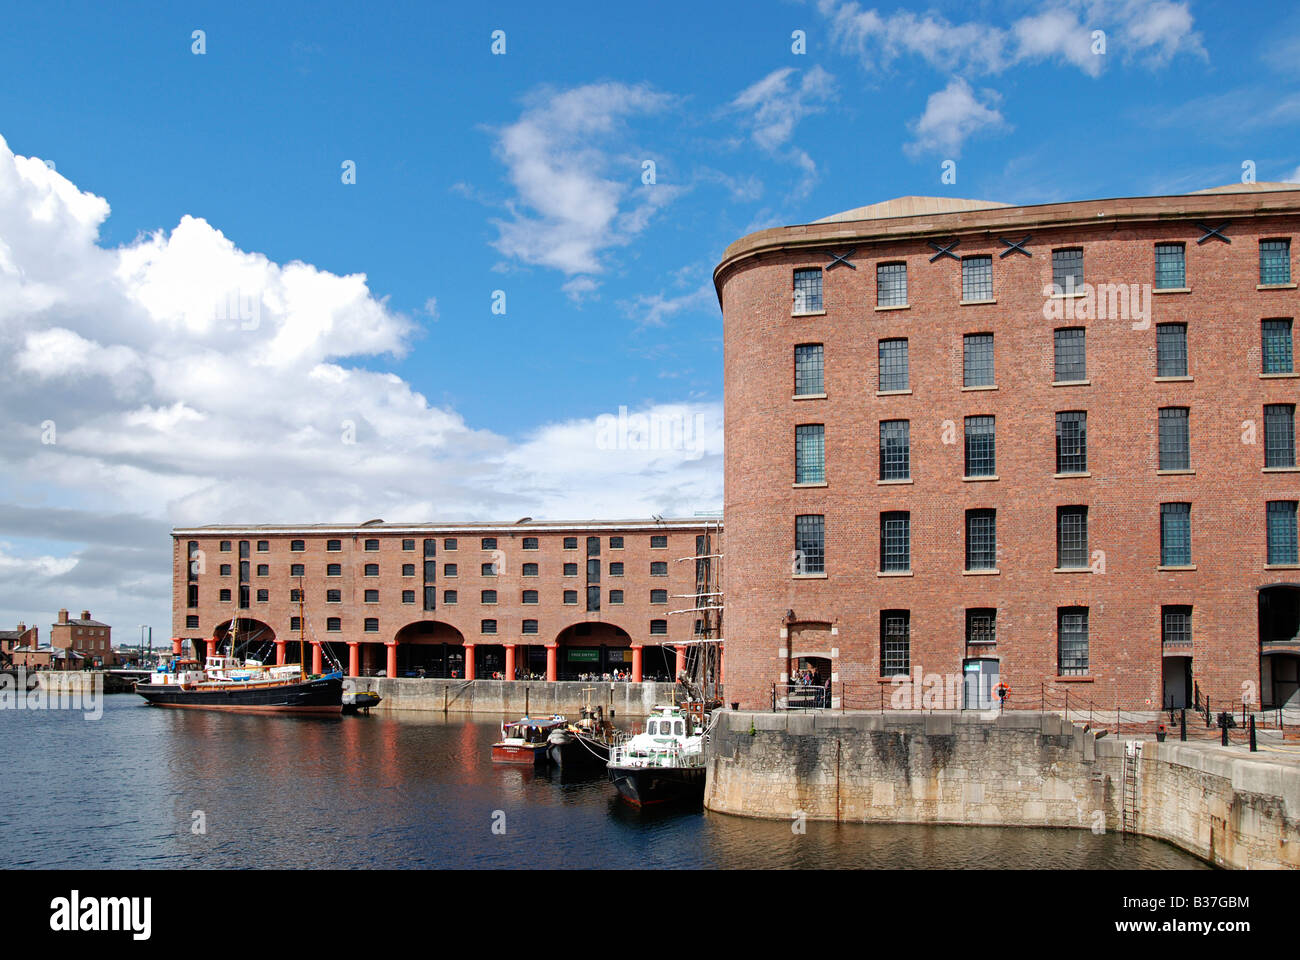 the restored 'albert dock' in liverpool,england,uk Stock Photo